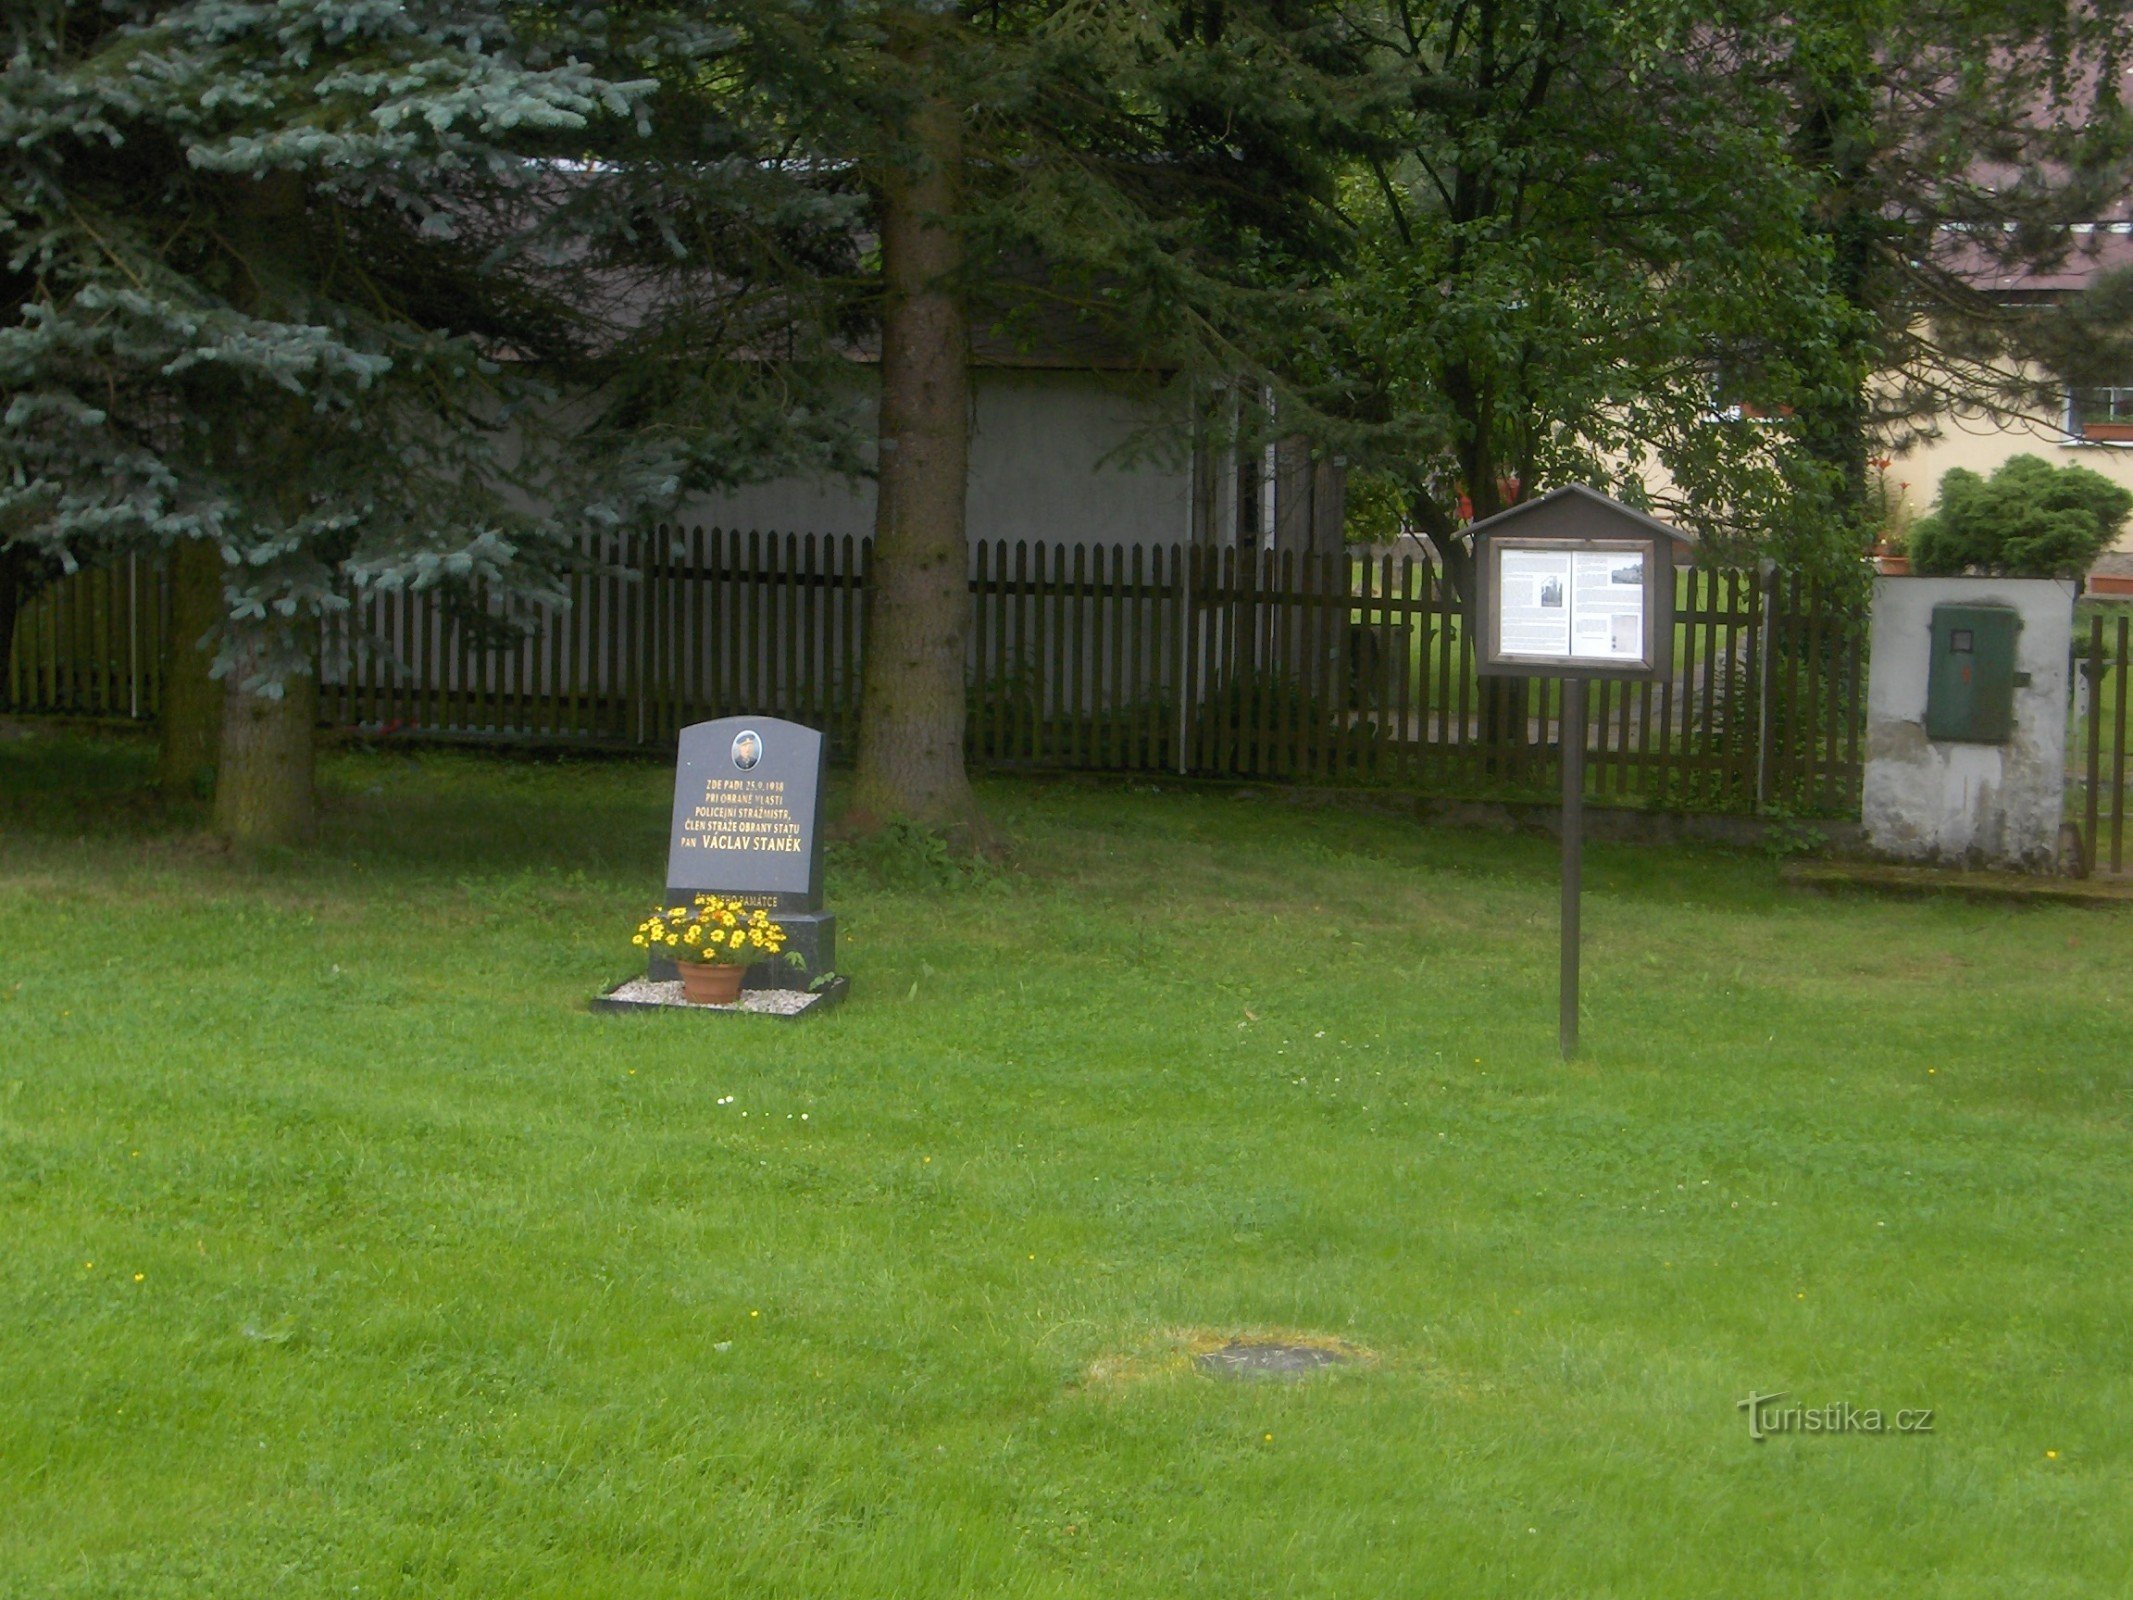 Μνημείο για τη φύλαξη του Václav Staňek.